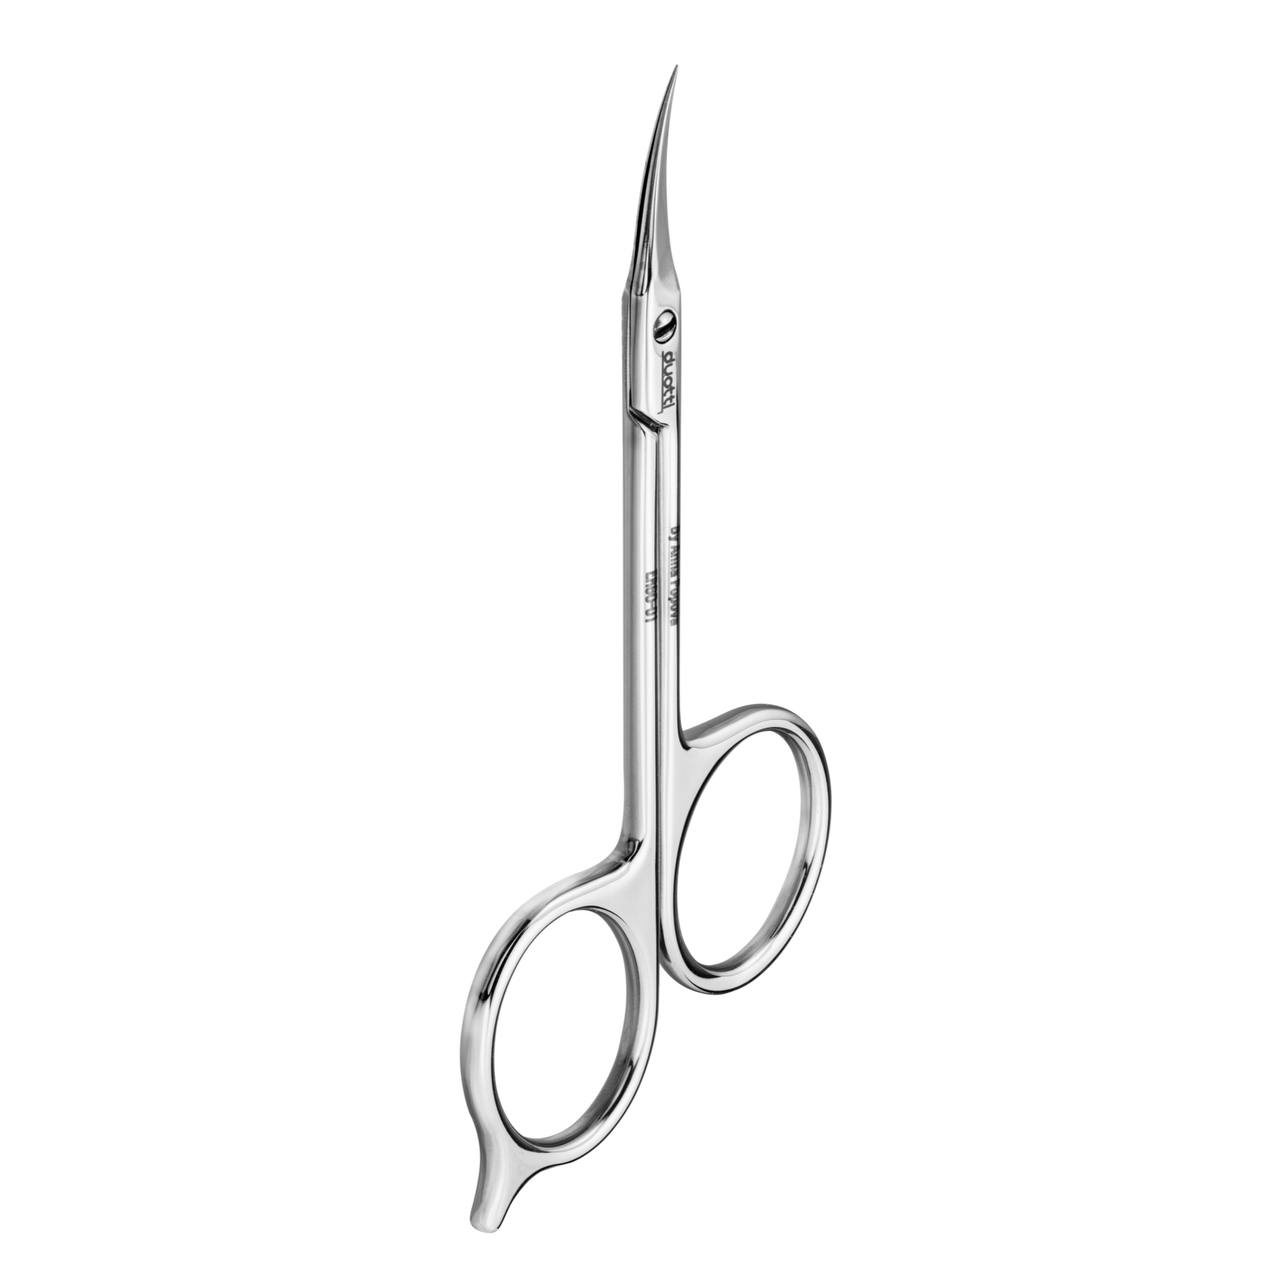 1st Ergonomic Professional Cuticle Scissors